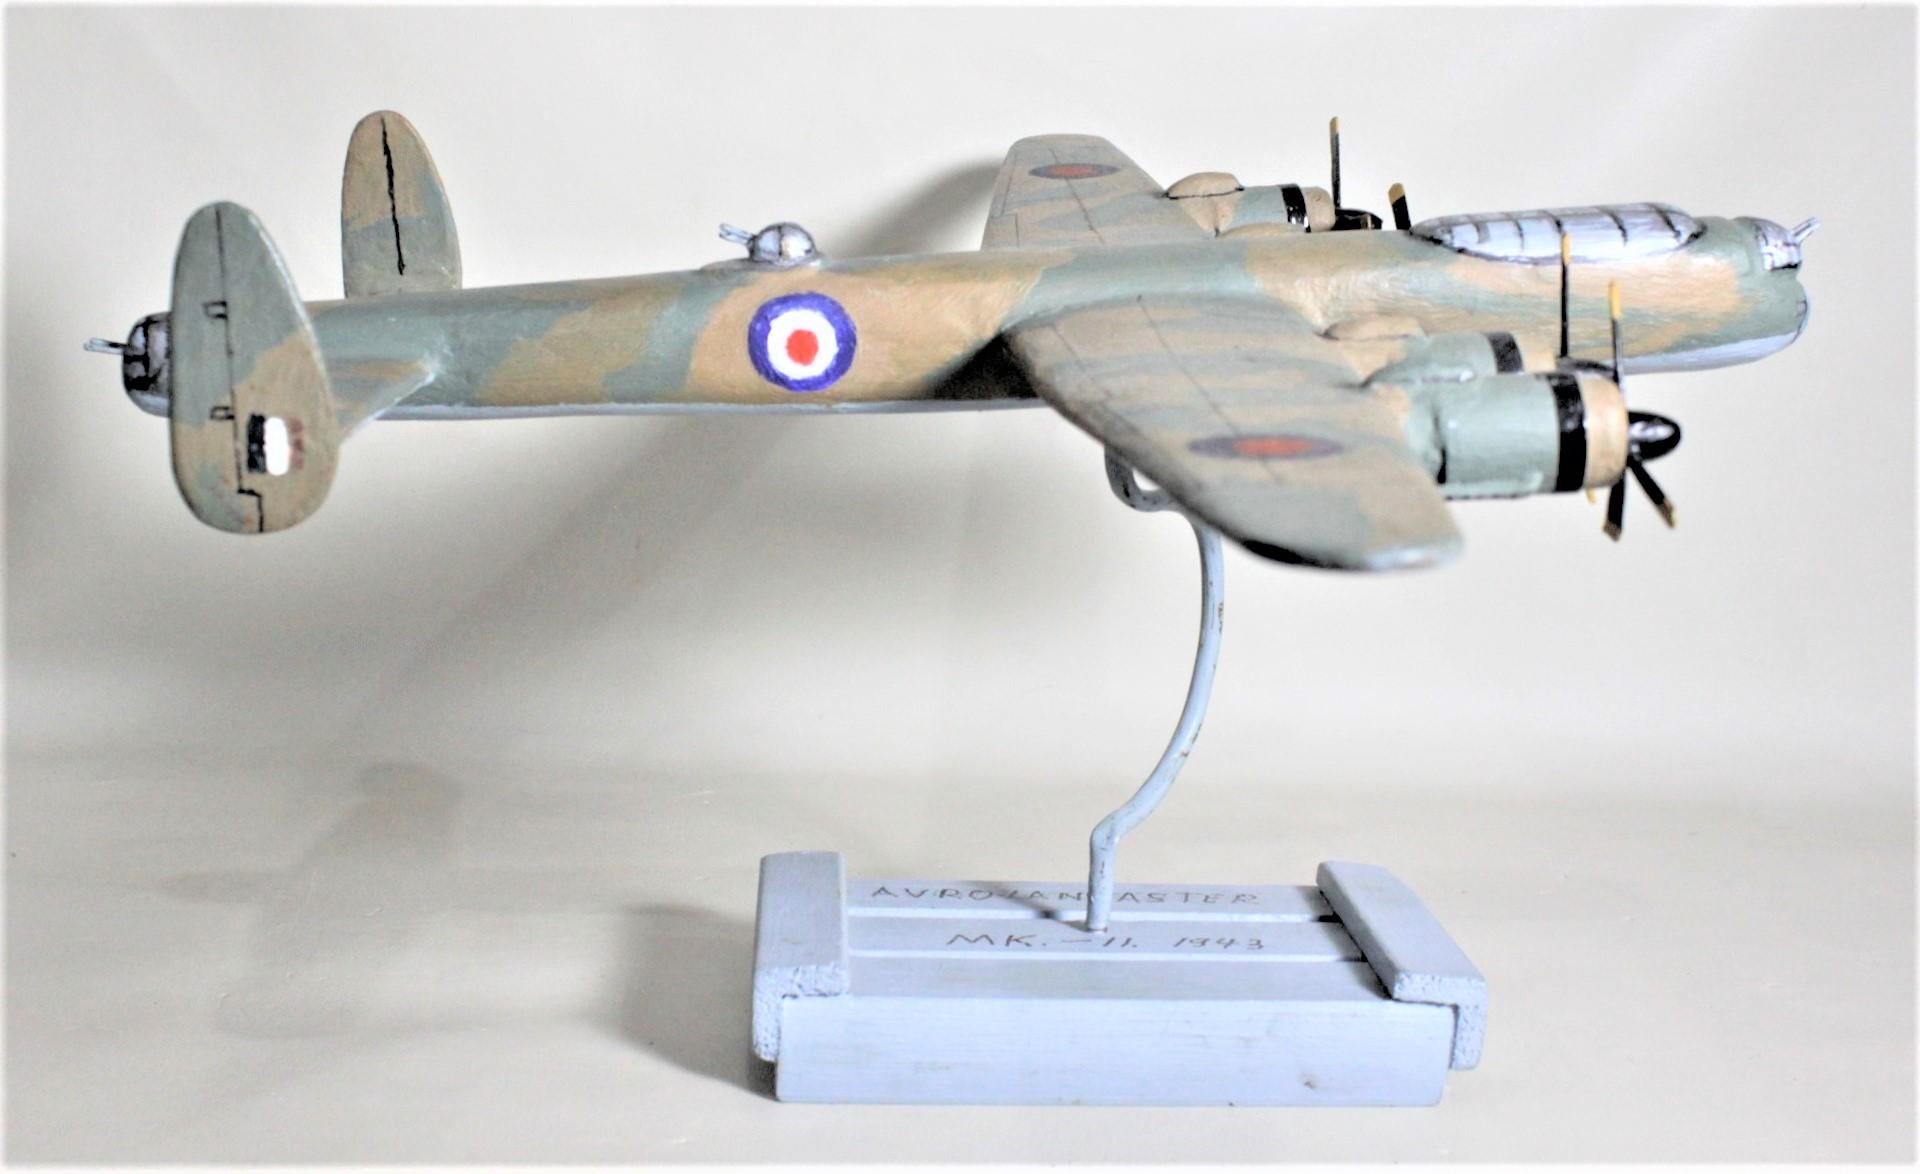 Cette maquette artisanale d'un bombardier Lancaster est signée sur la base, mais l'artiste n'a pas pu être identifié et est donc affiché comme Inconnu. Ce modèle d'avion en bois a vraisemblablement été fabriqué au Canada vers 1975 ou plus tard. Il